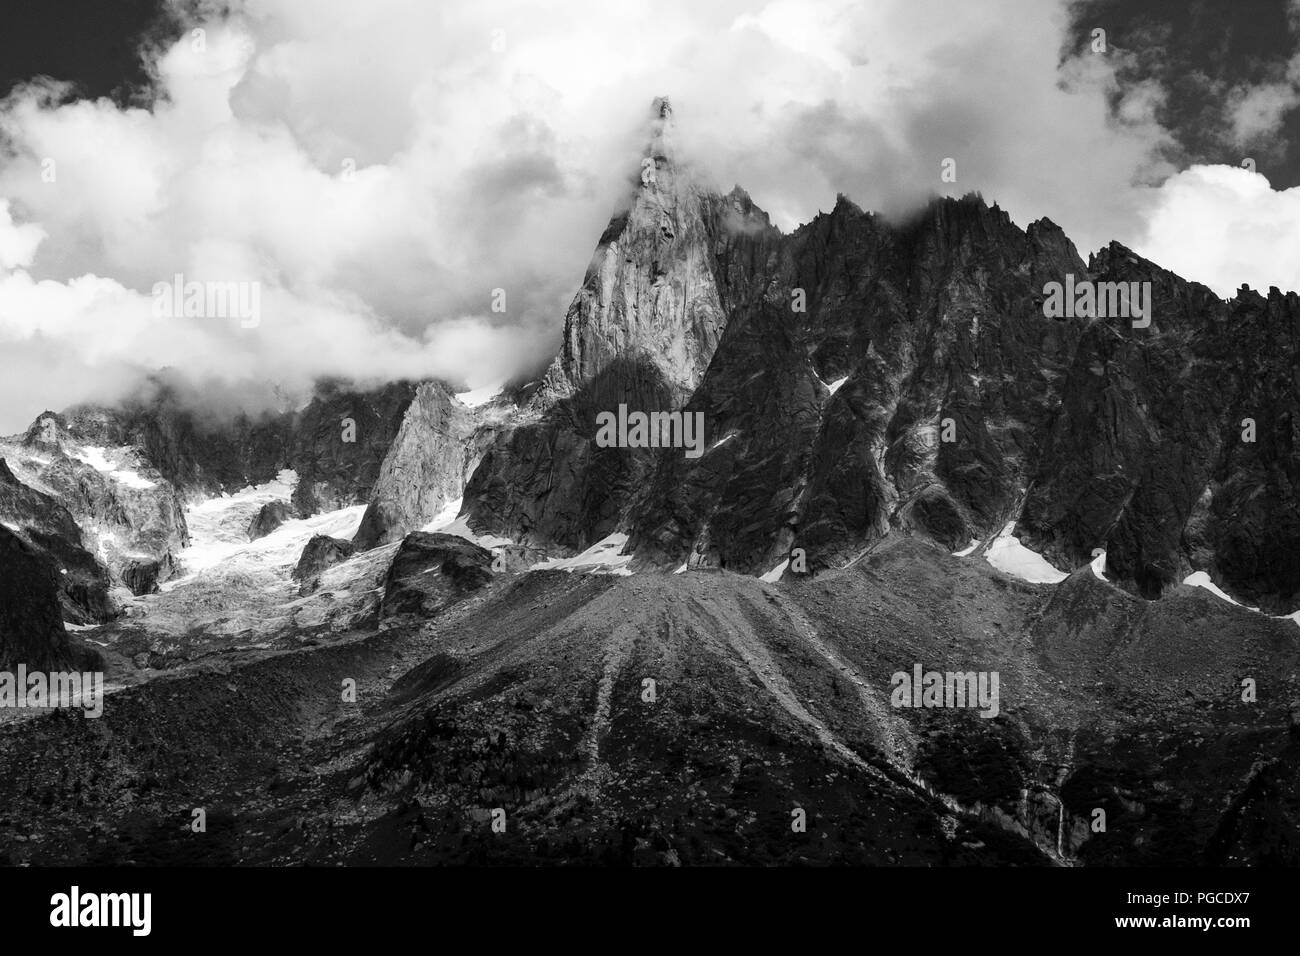 Chamonix, Francia. El 24 de agosto de 2018. Fine Art, imágenes de paisaje de Mont Blanc y de las montañas circundantes, Chamonix, Francia 24/08/2018 Foto de stock